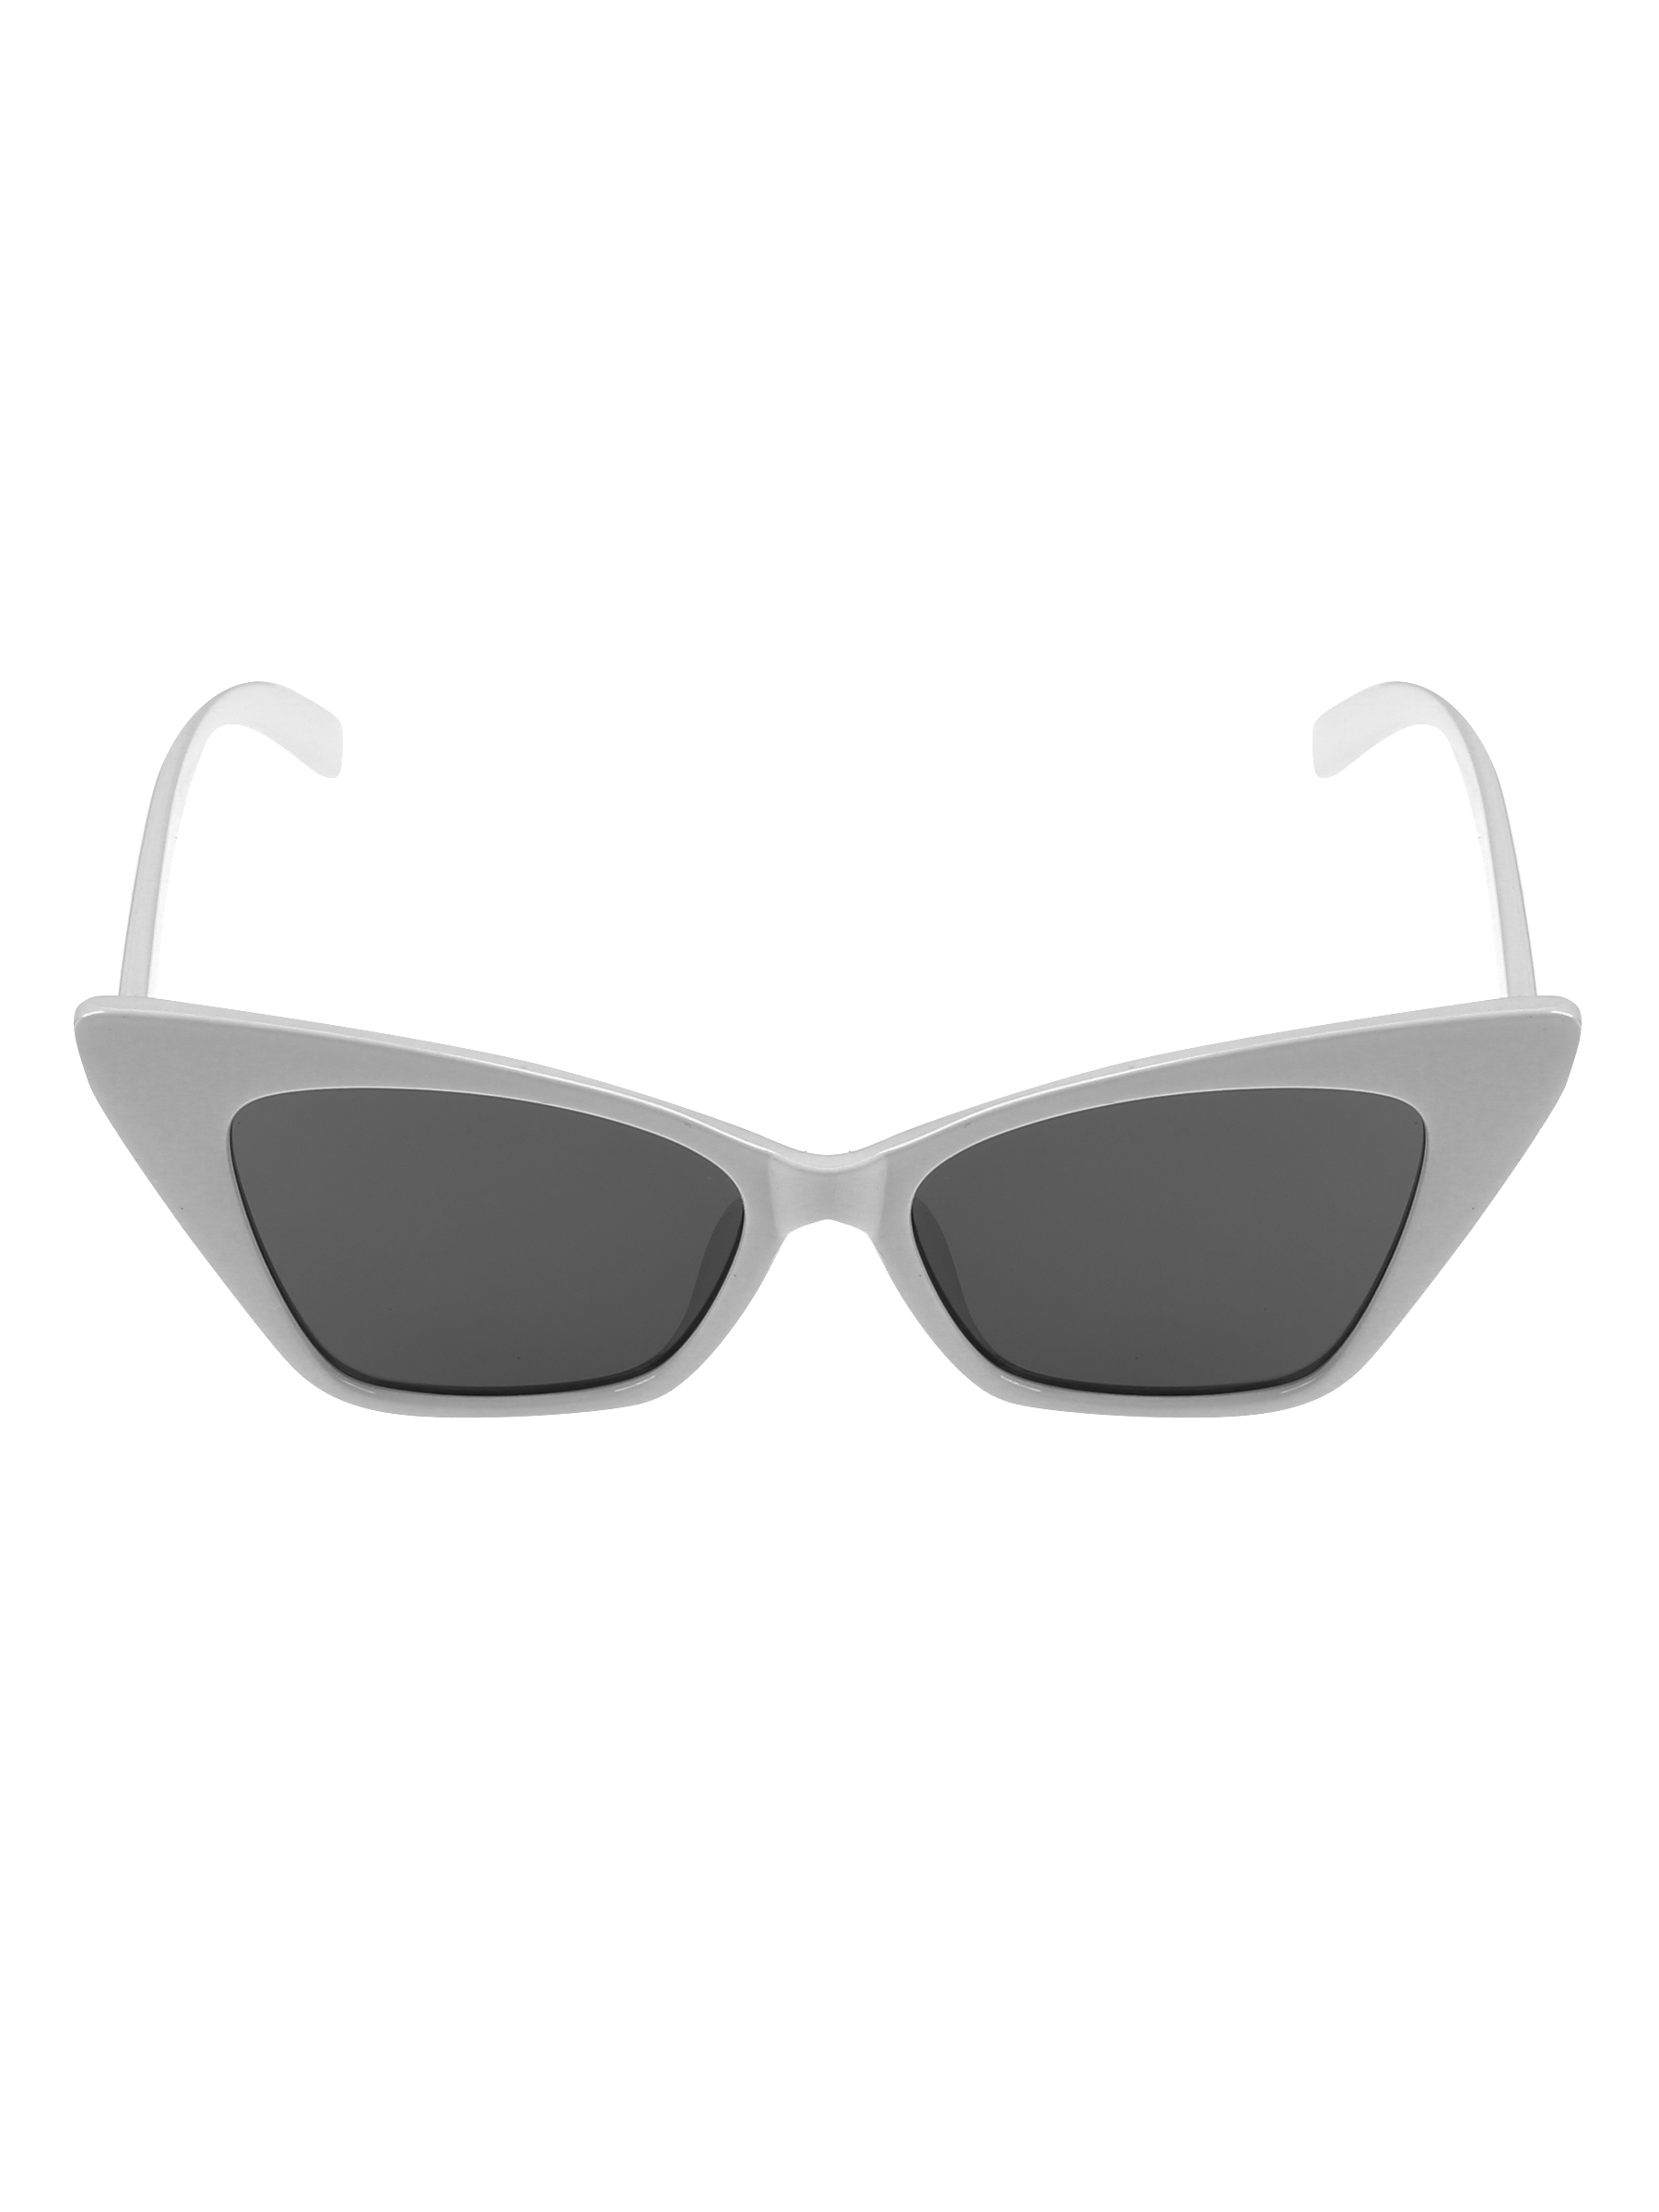 Солнцезащитные очки женские Pretty Mania NDP014 черные